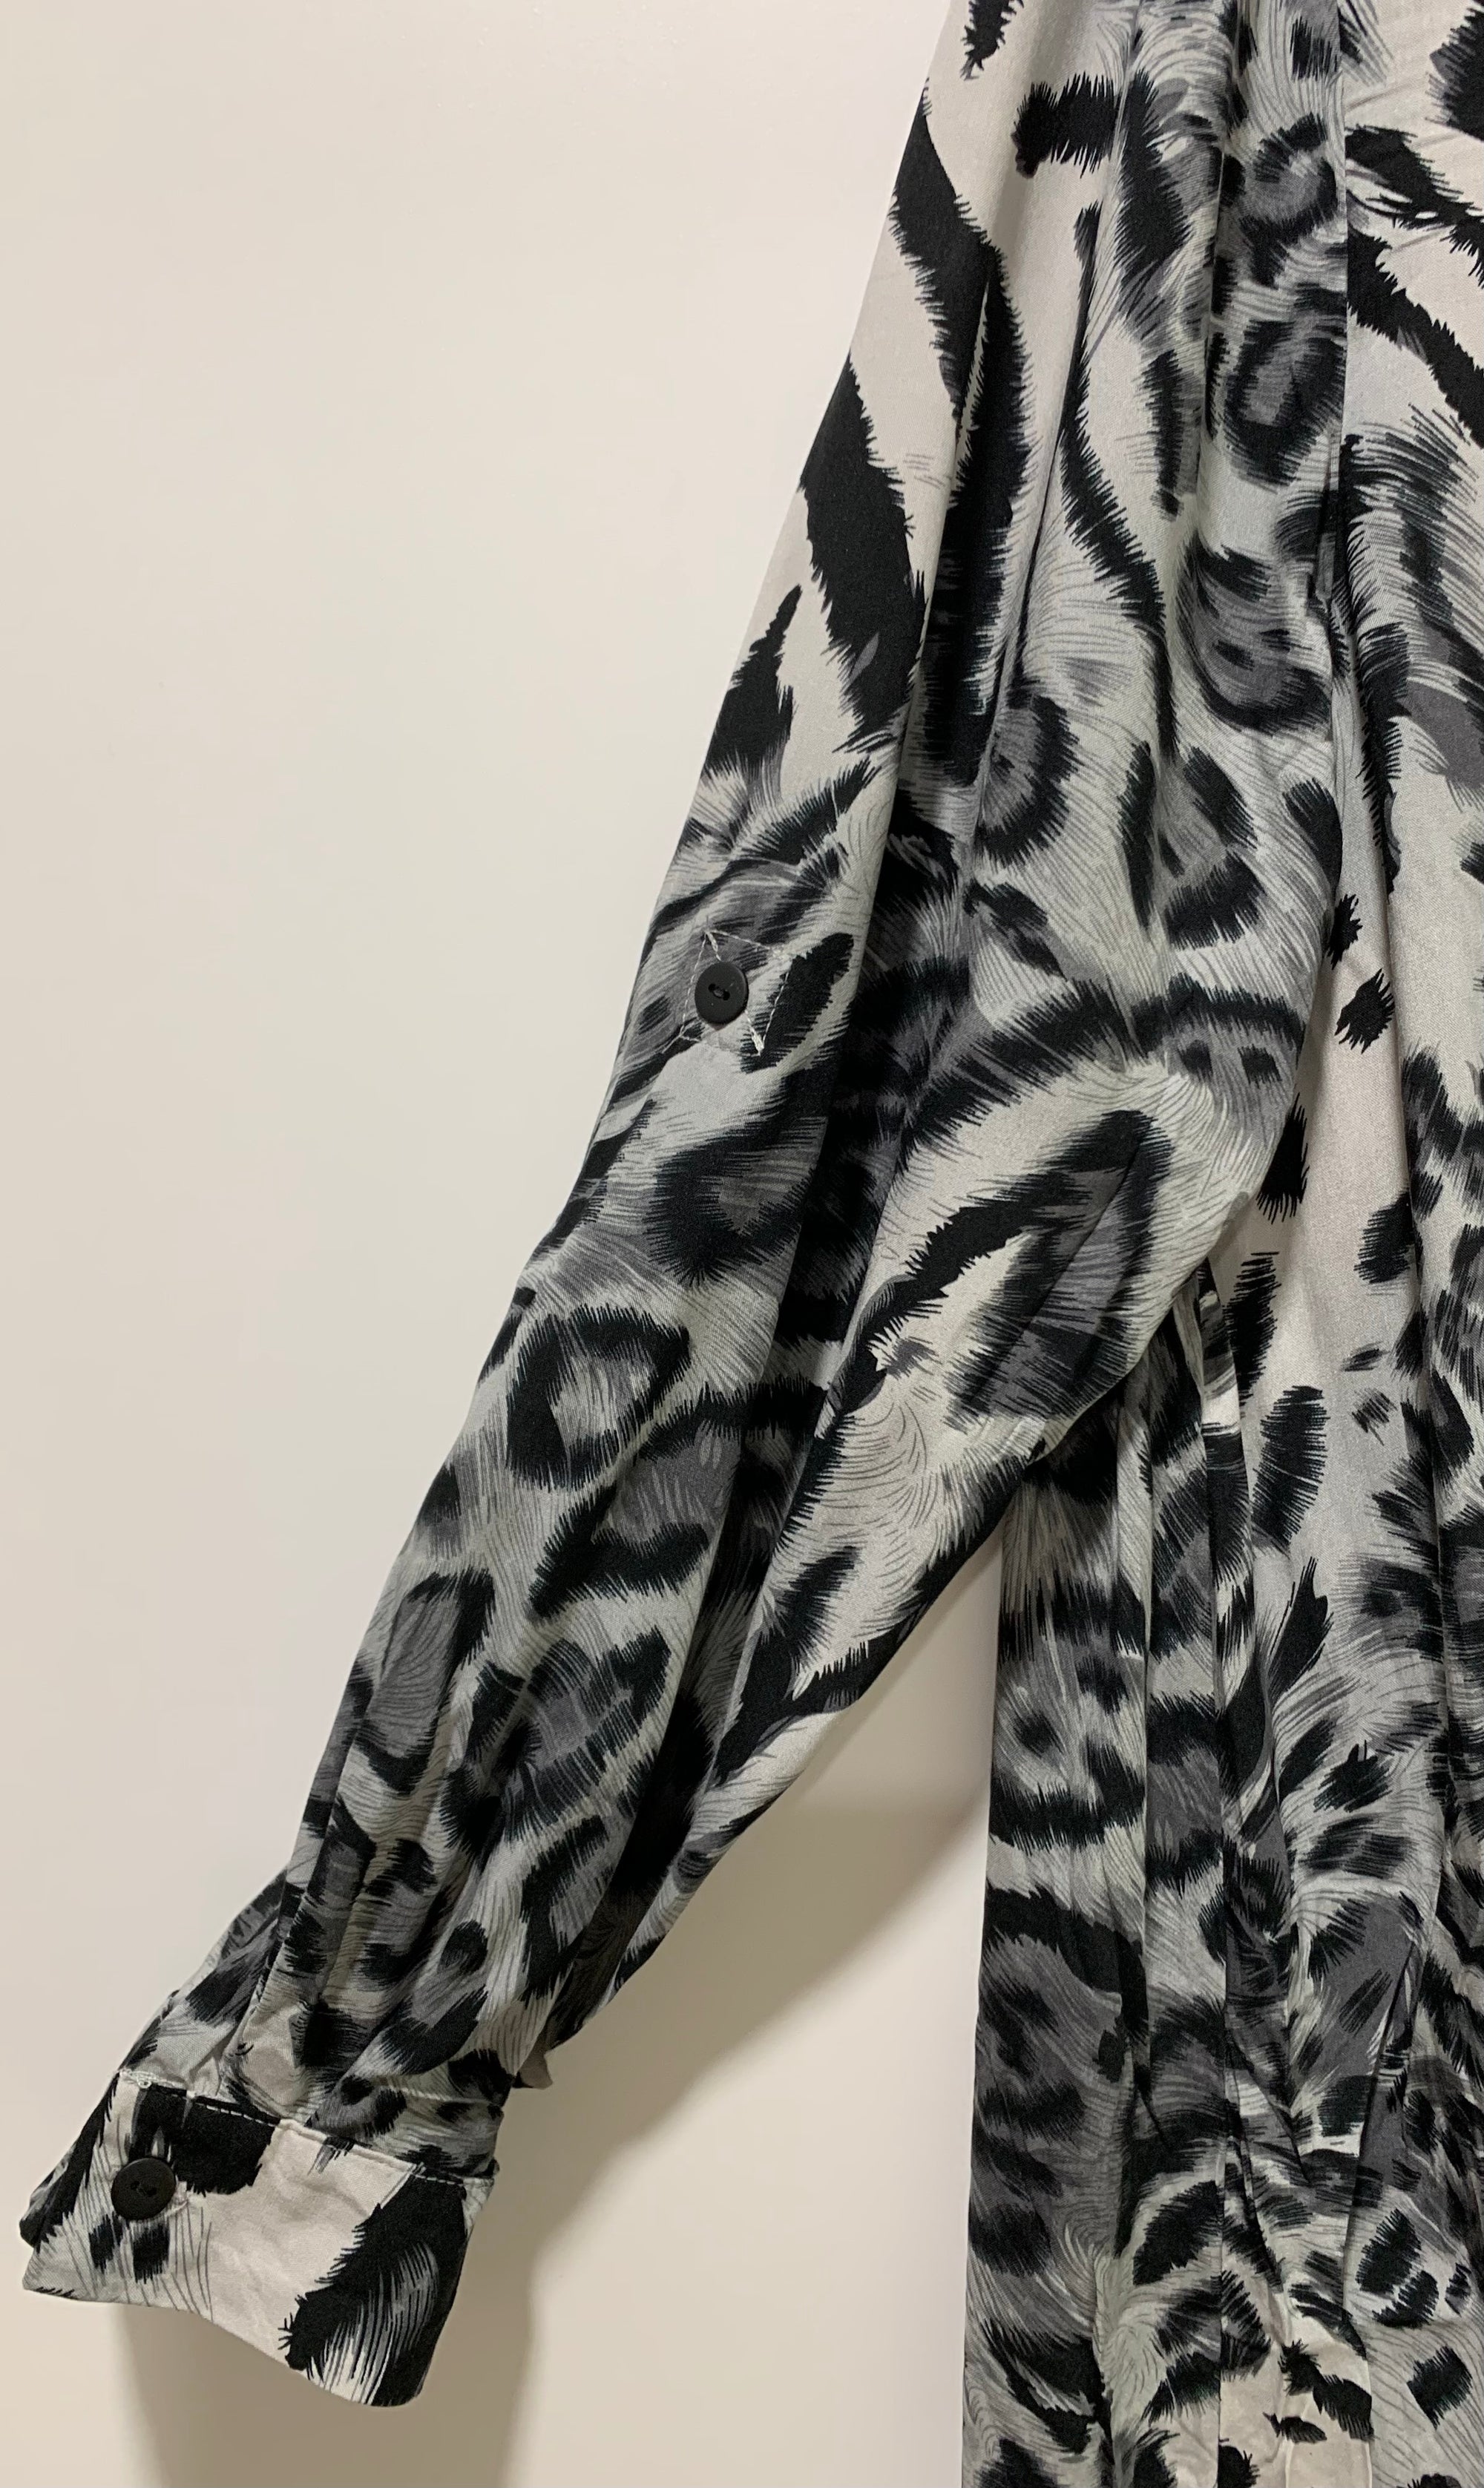 Animal Print Dress in Black & White Zebra Print Available in Sizes S/M & L/XL